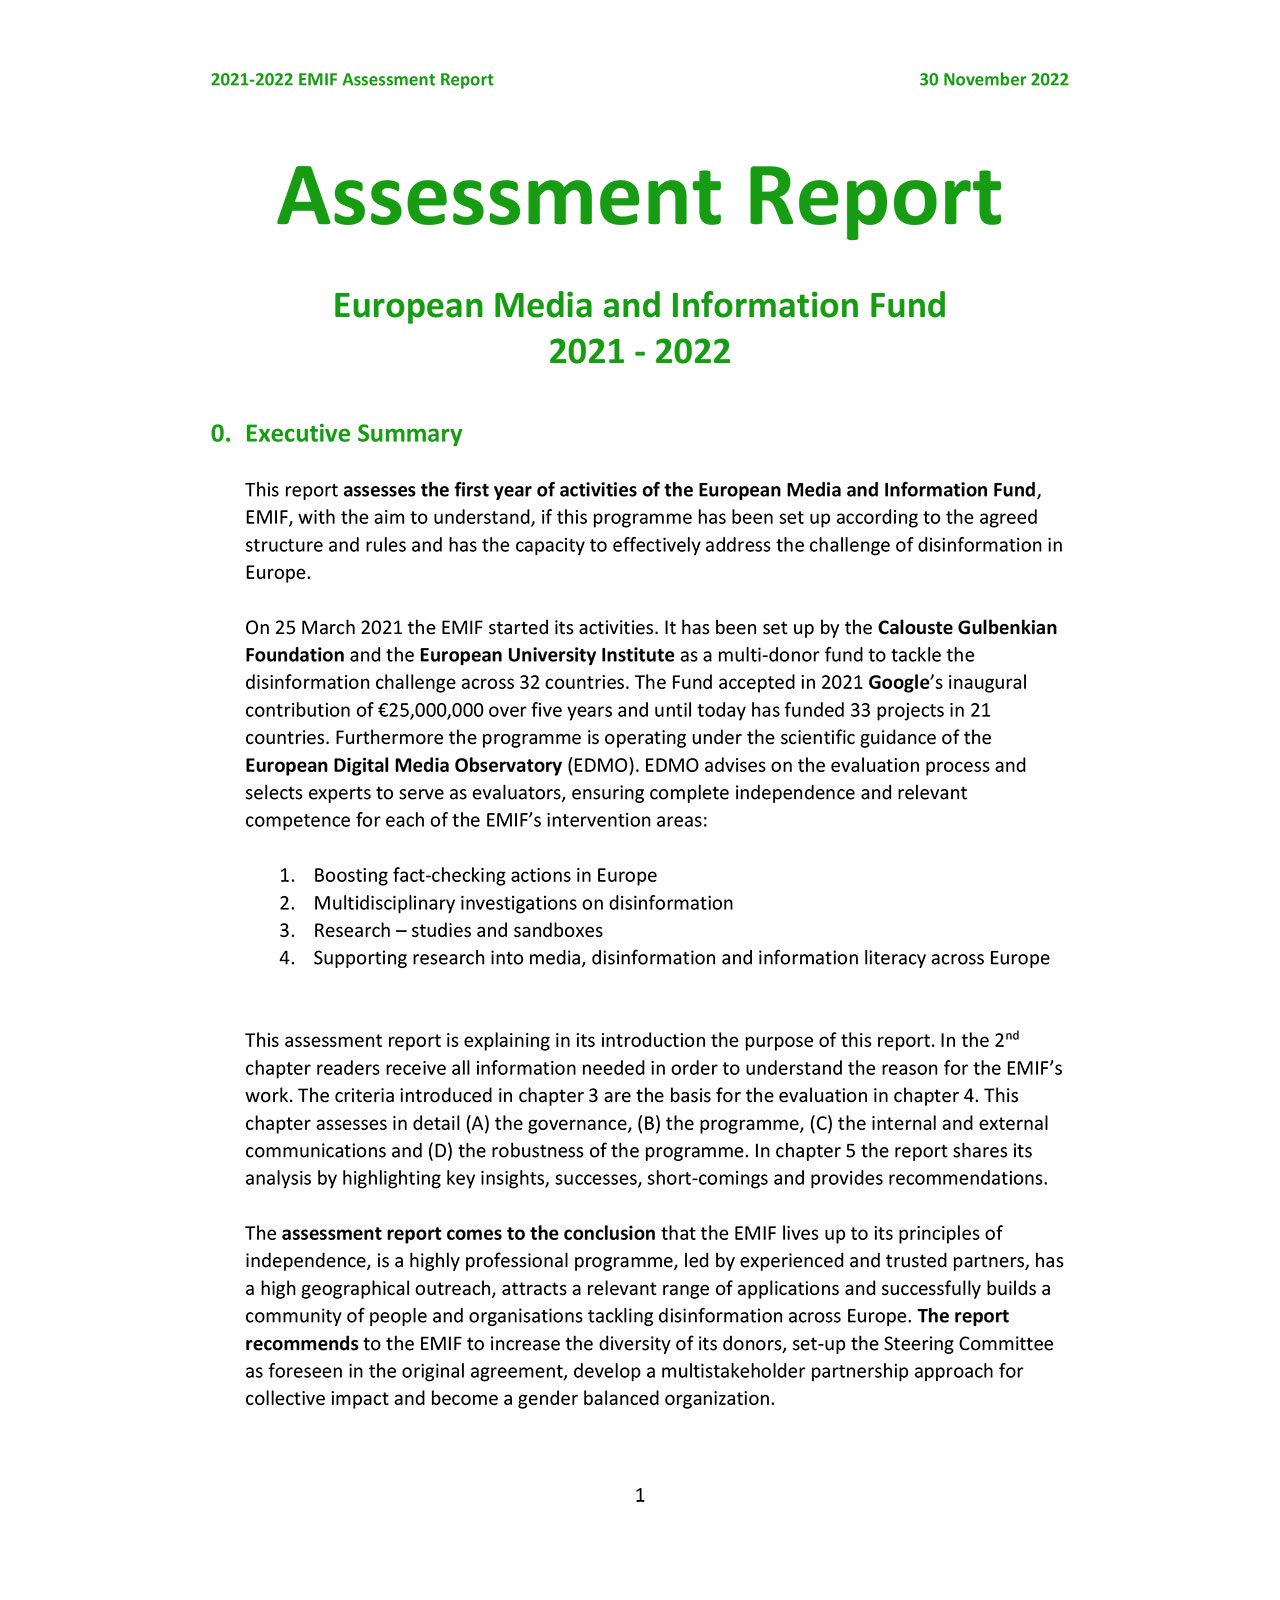 2022 External Assessment Report